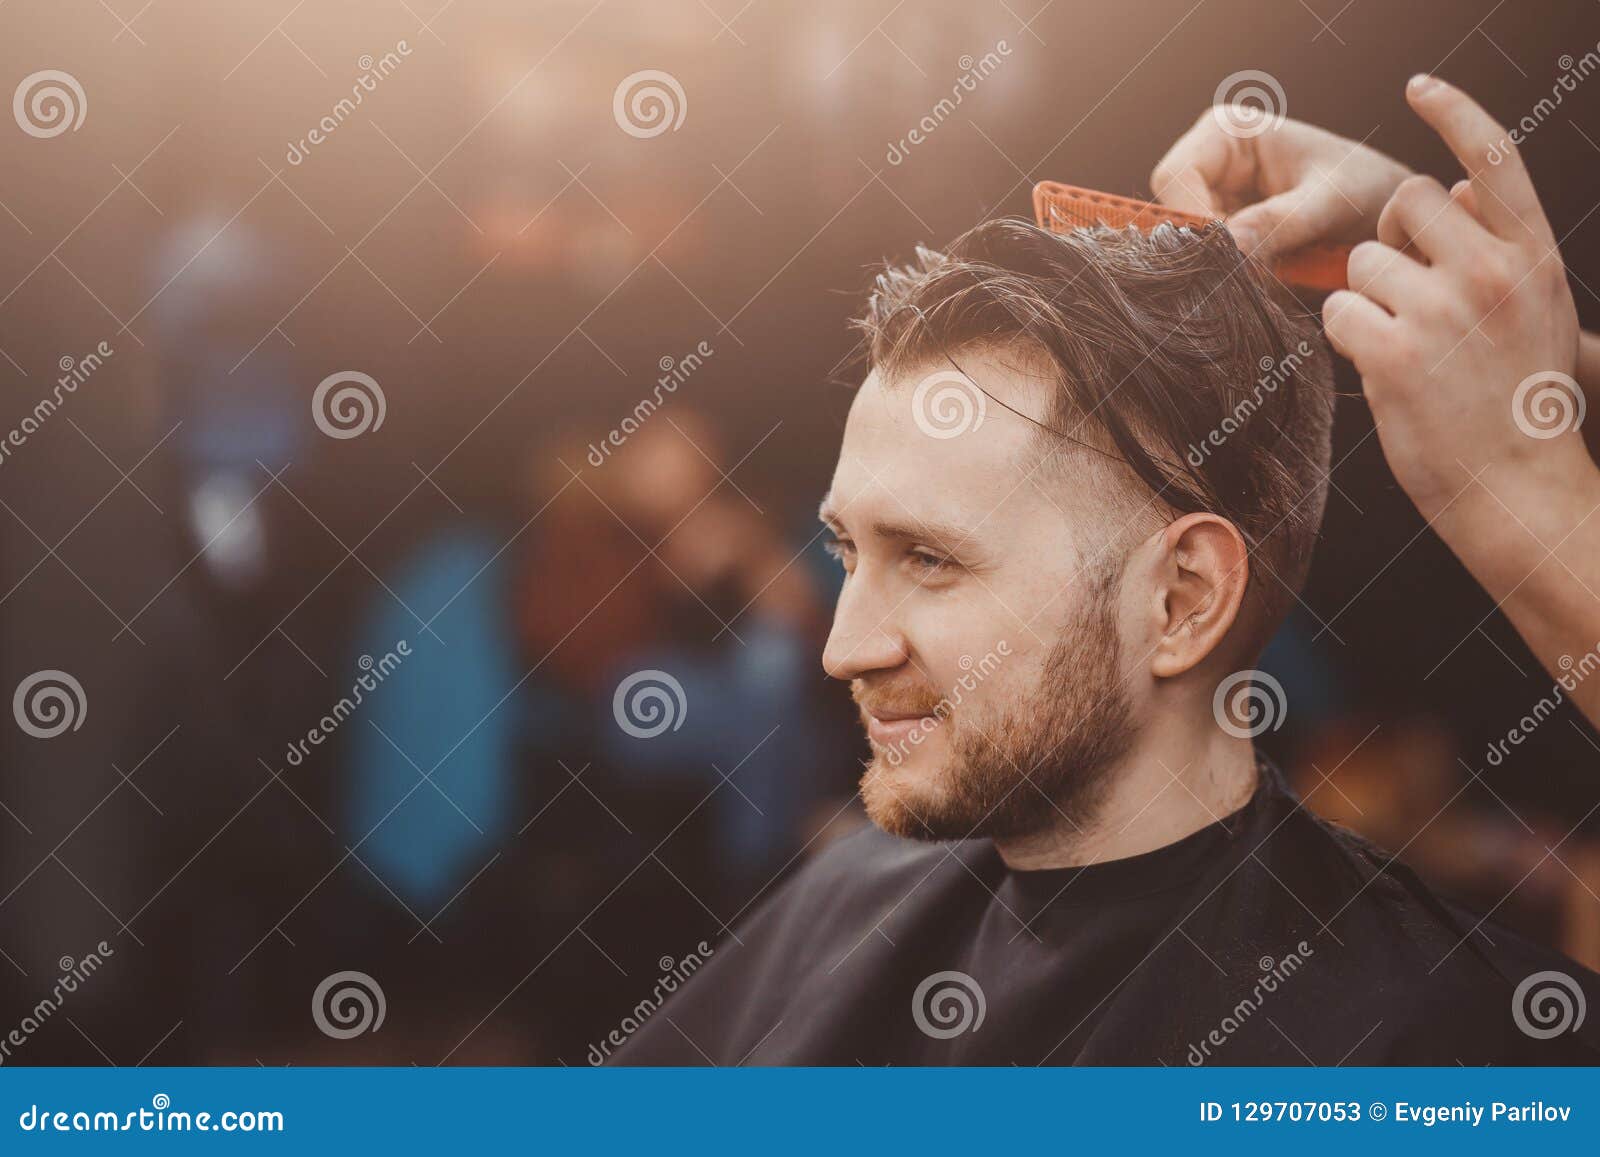 Background Of Hair Salon For Men Barber Shop Stock Image Image